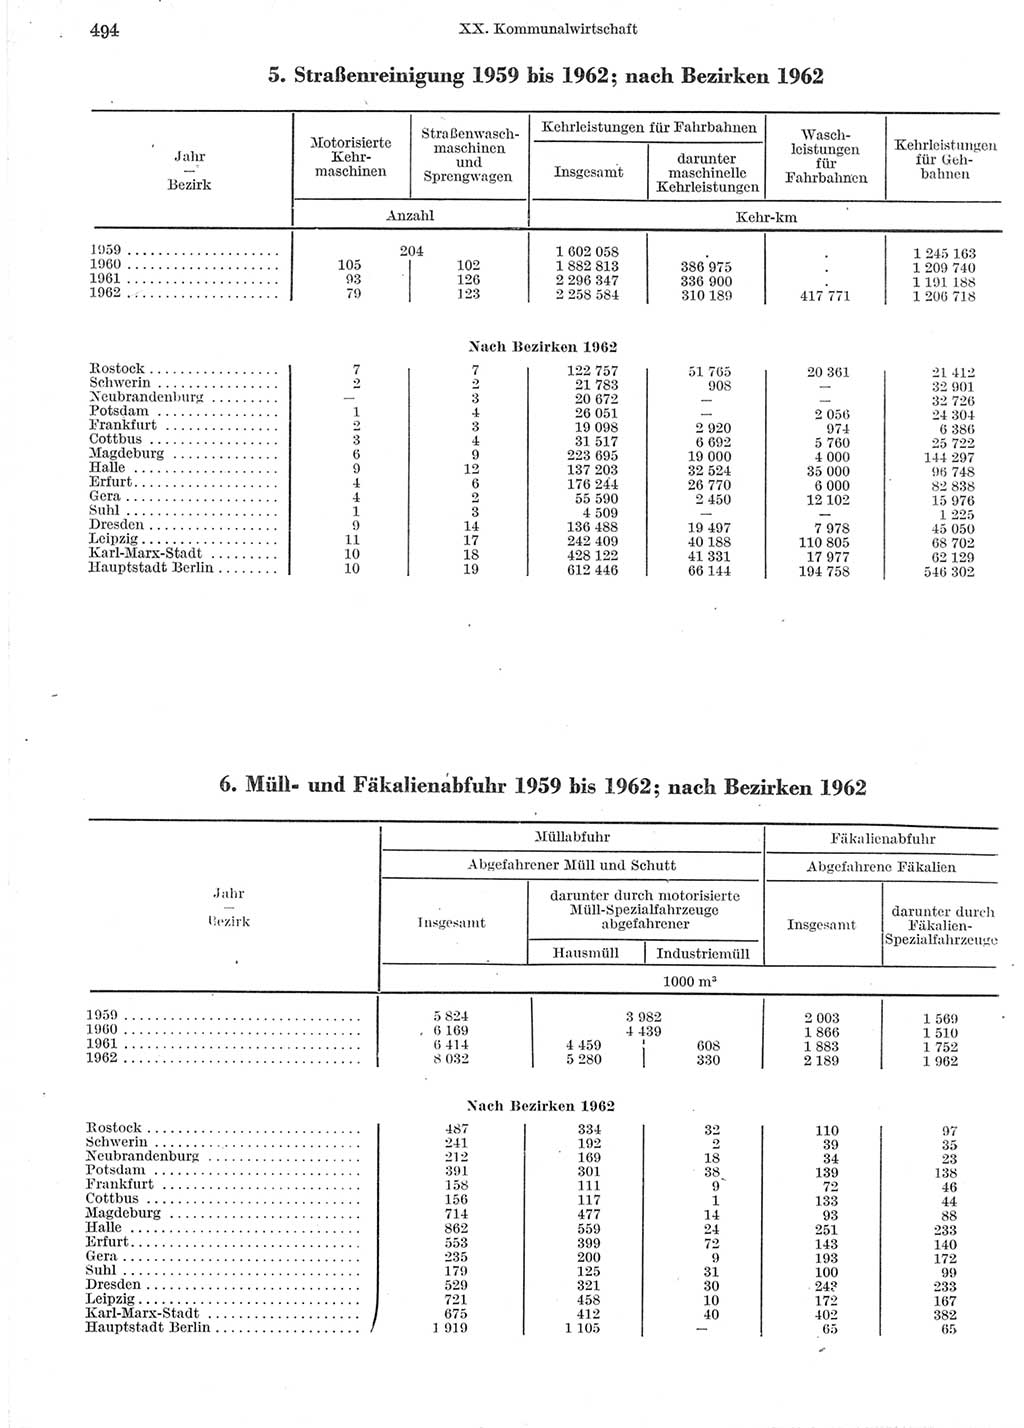 Statistisches Jahrbuch der Deutschen Demokratischen Republik (DDR) 1964, Seite 494 (Stat. Jb. DDR 1964, S. 494)